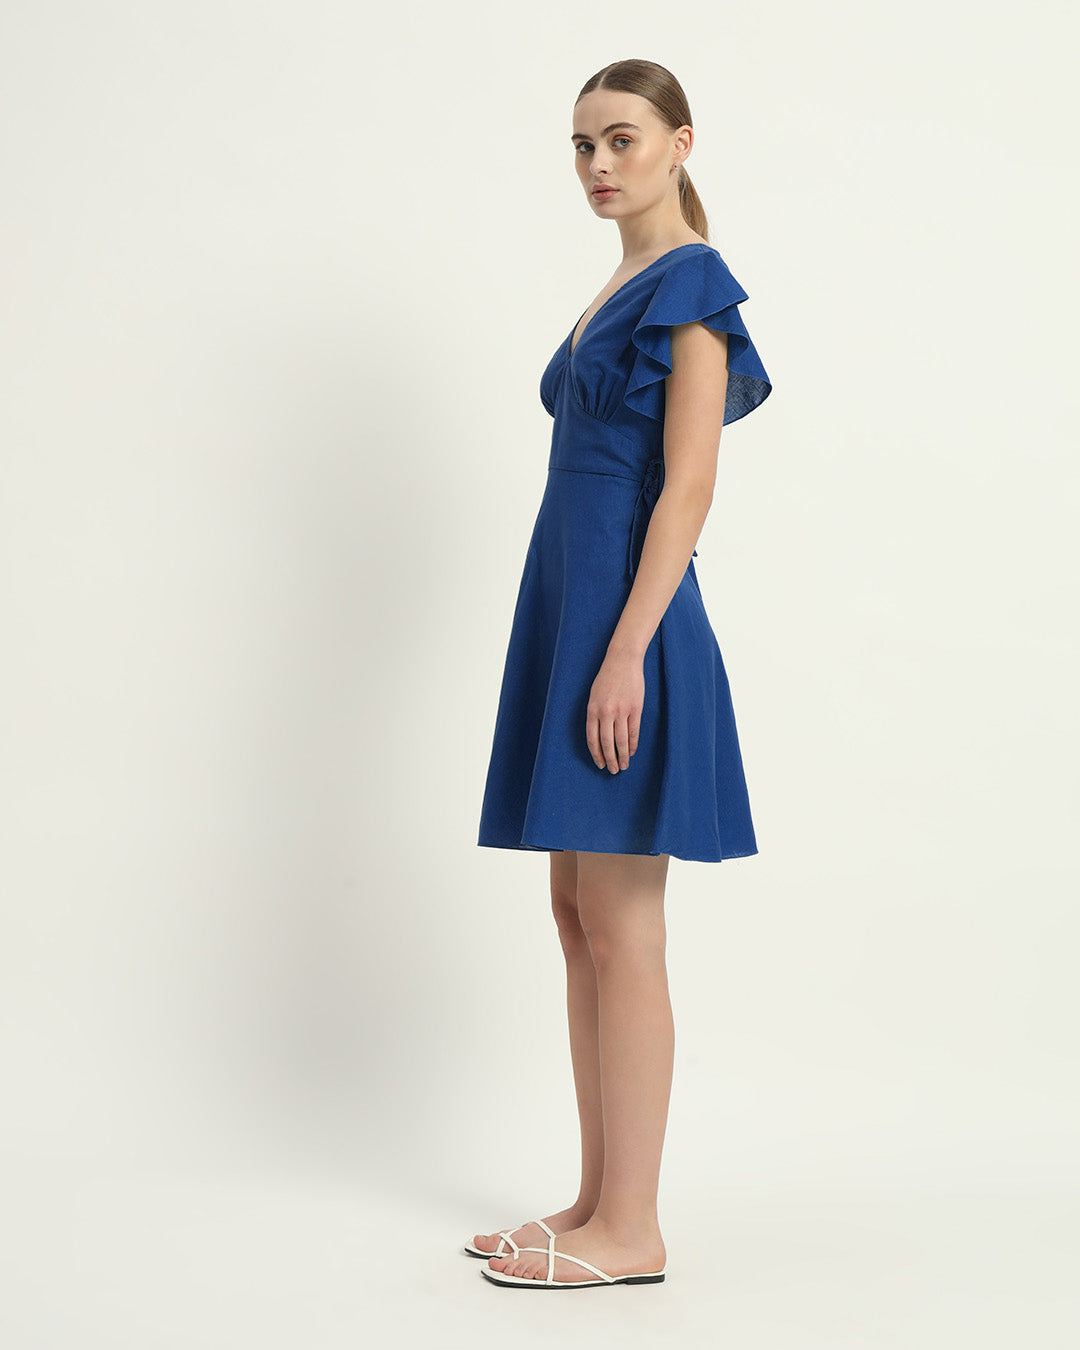 The Cobalt Fairlie Cotton Dress